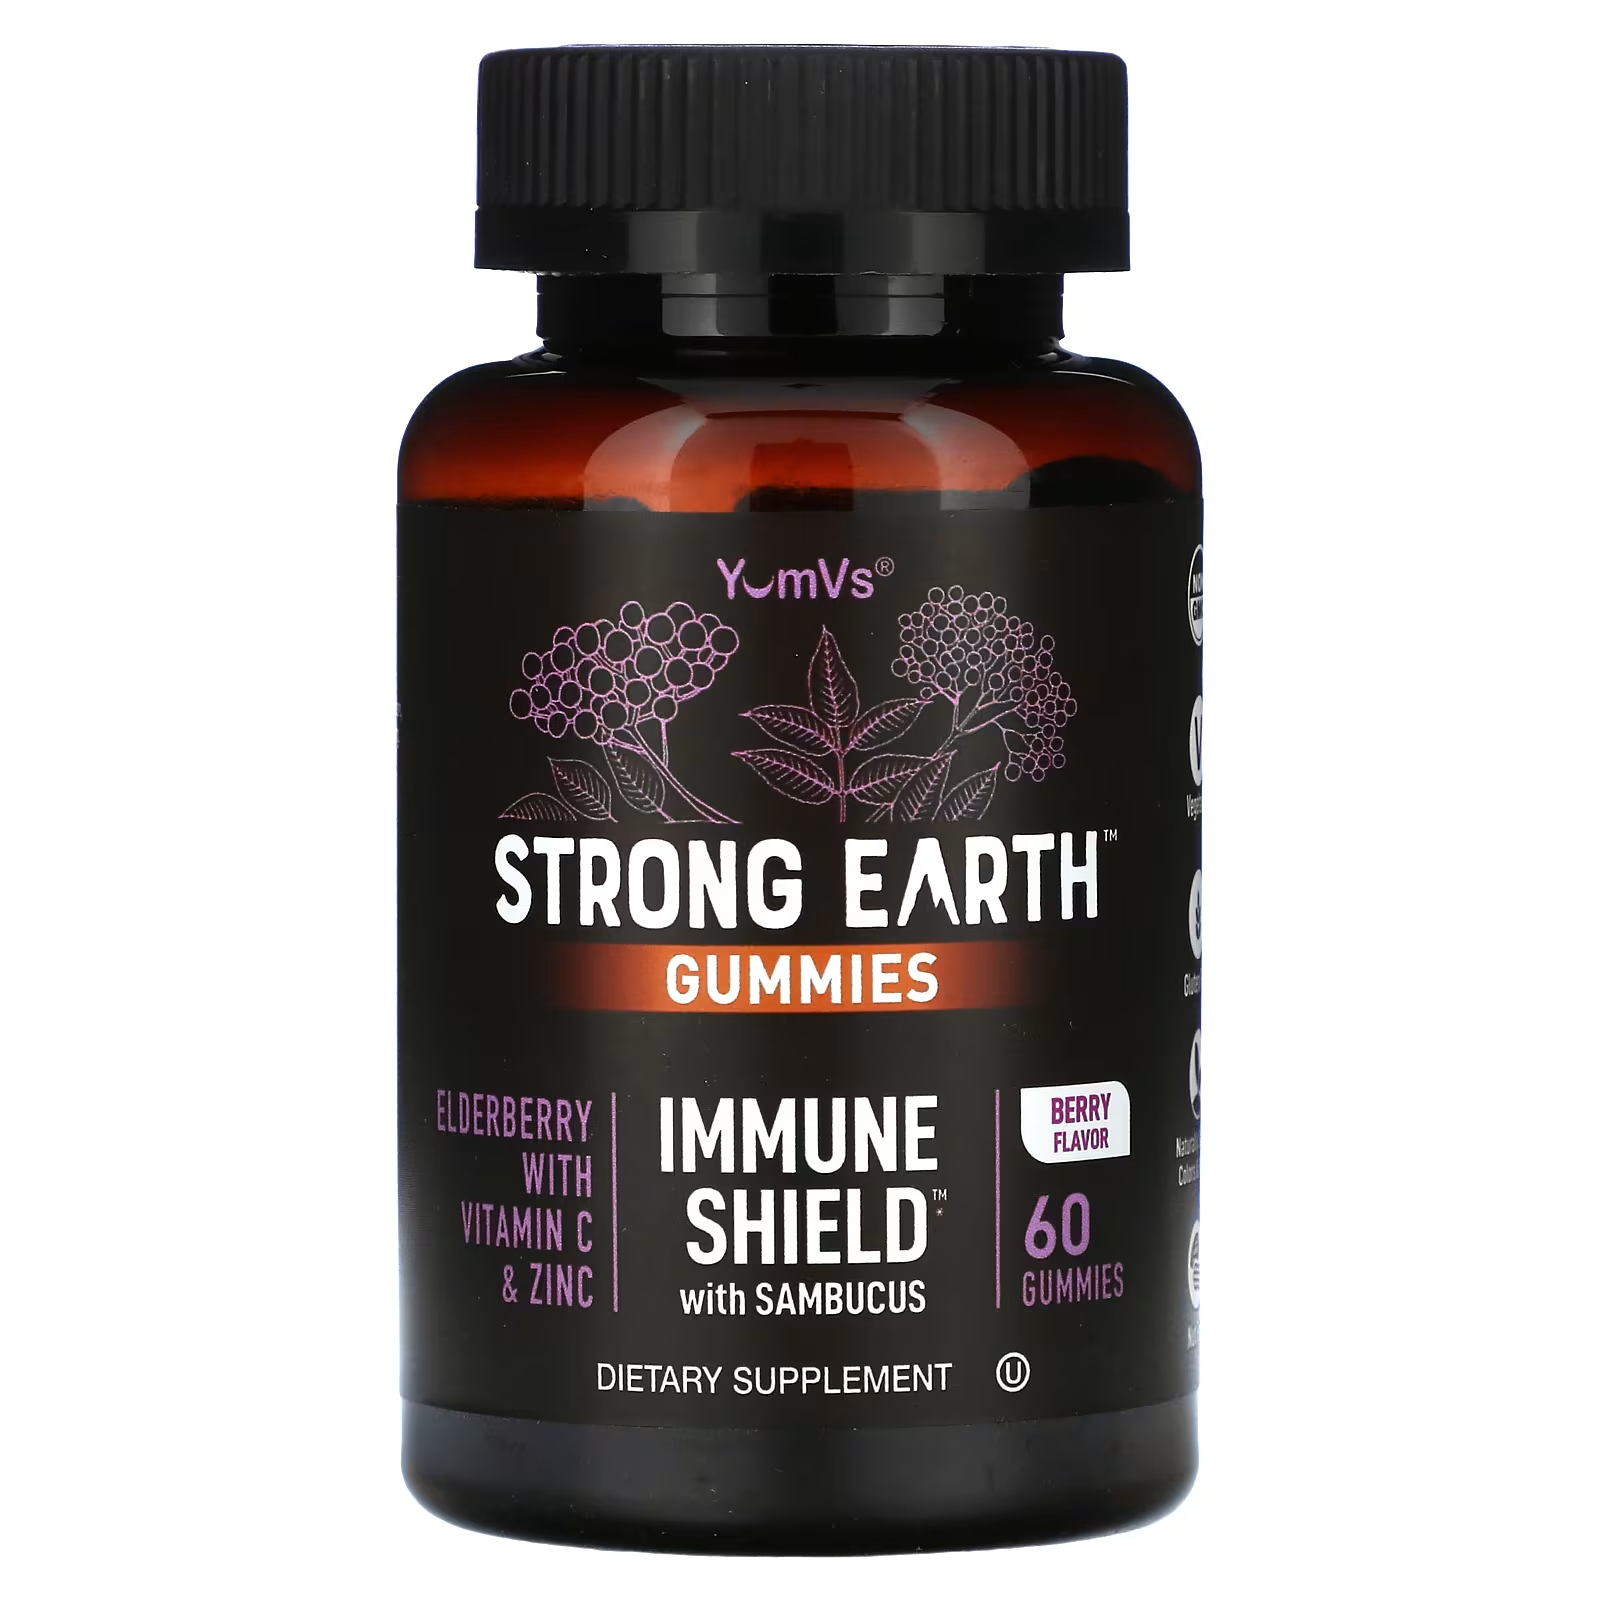 Пищевая добавка YumV's Strong Earth Gummies Immune Shield с ягодами бузины, 60 жевательных конфет swanson бузина с цинком и витамином c ягоды 60 жевательных таблеток